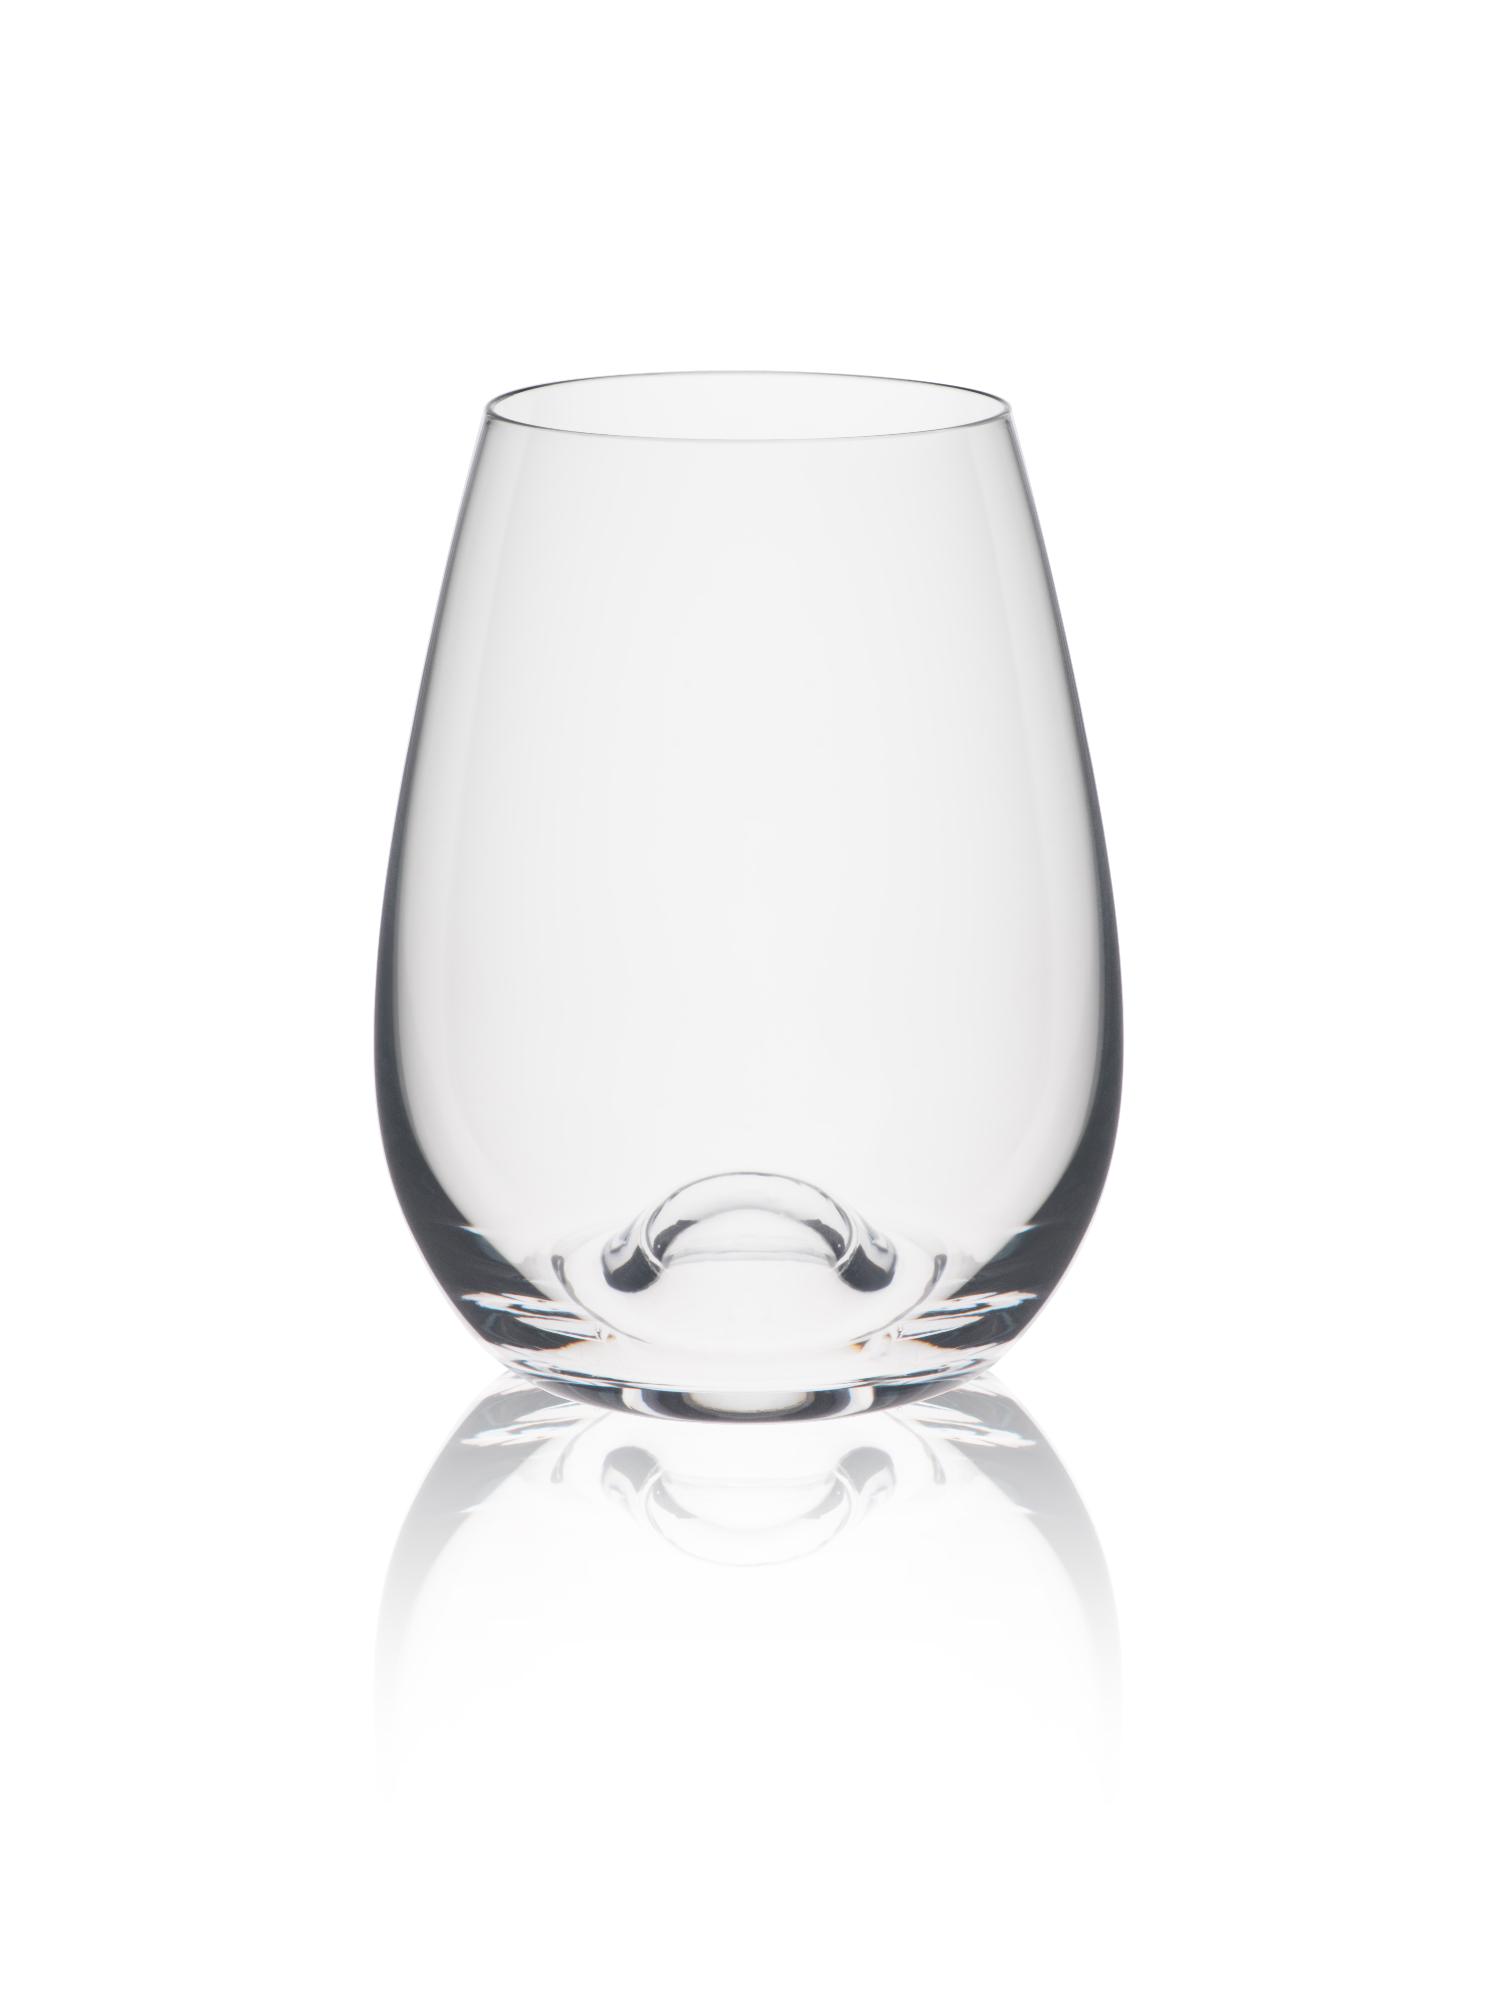 Wine Solution Bordeaux glass, 460ml